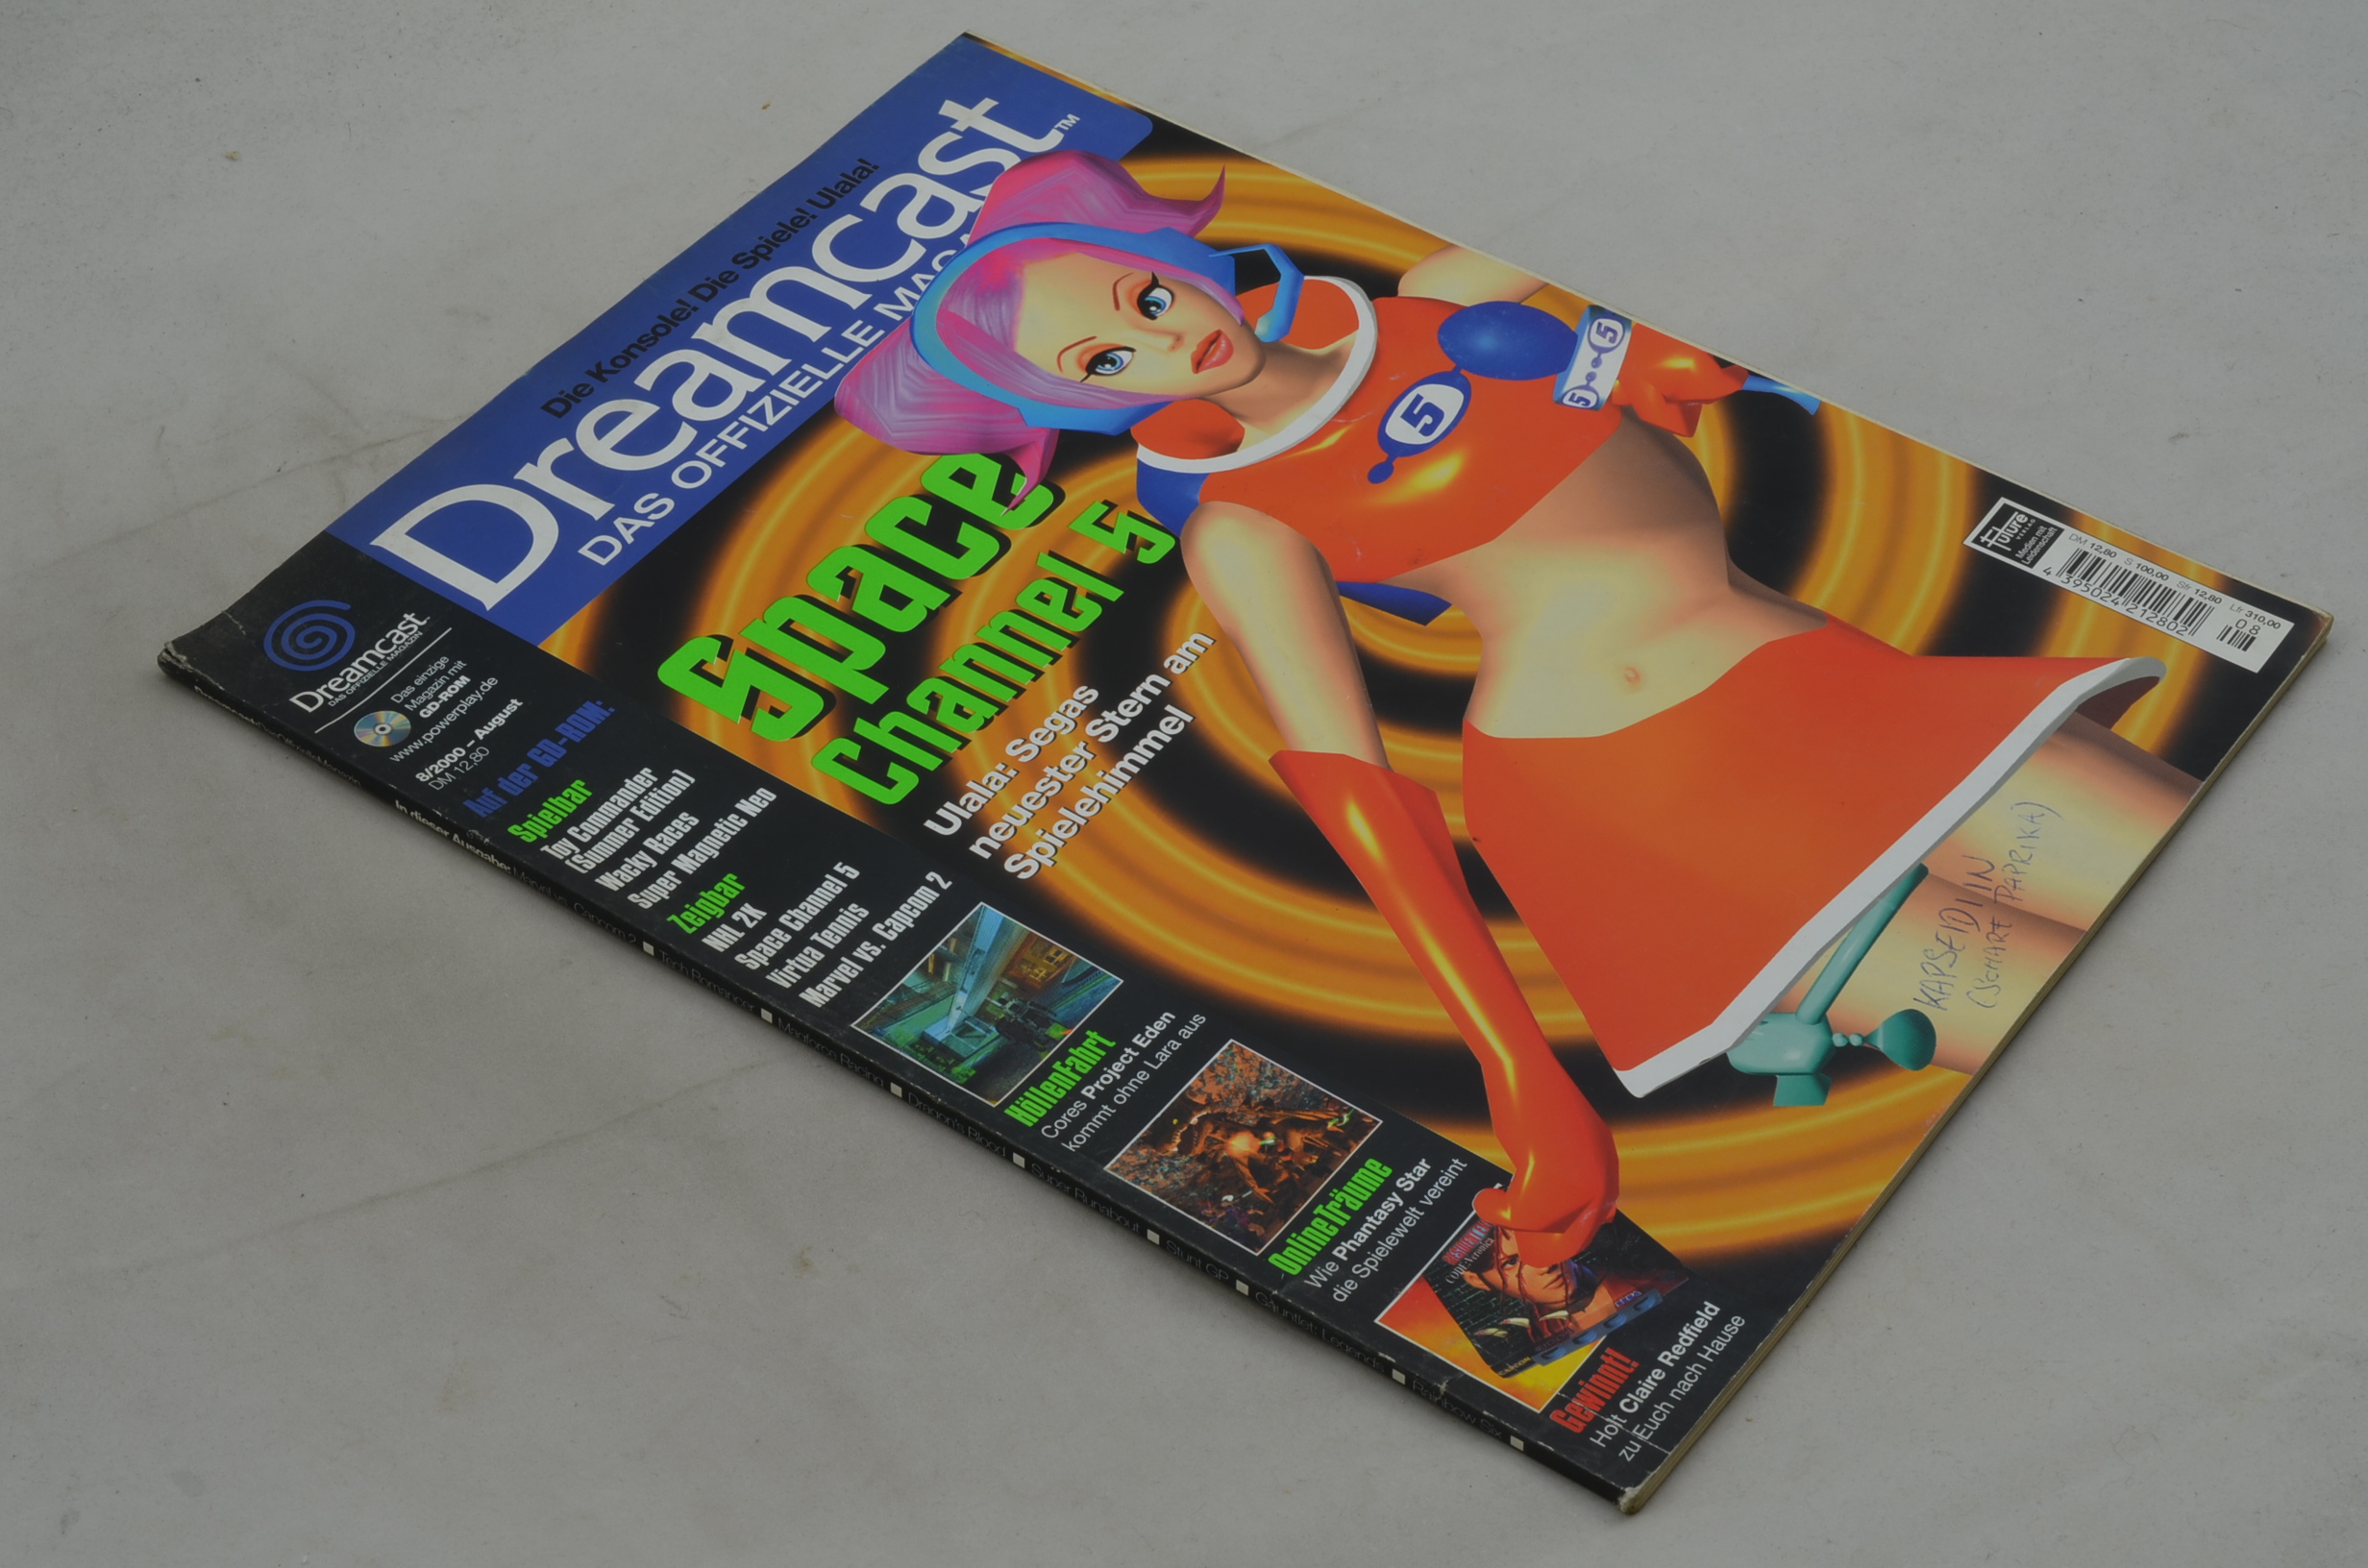 Produktbild von Dreamcast - Das offizielle Magazin 8/2000